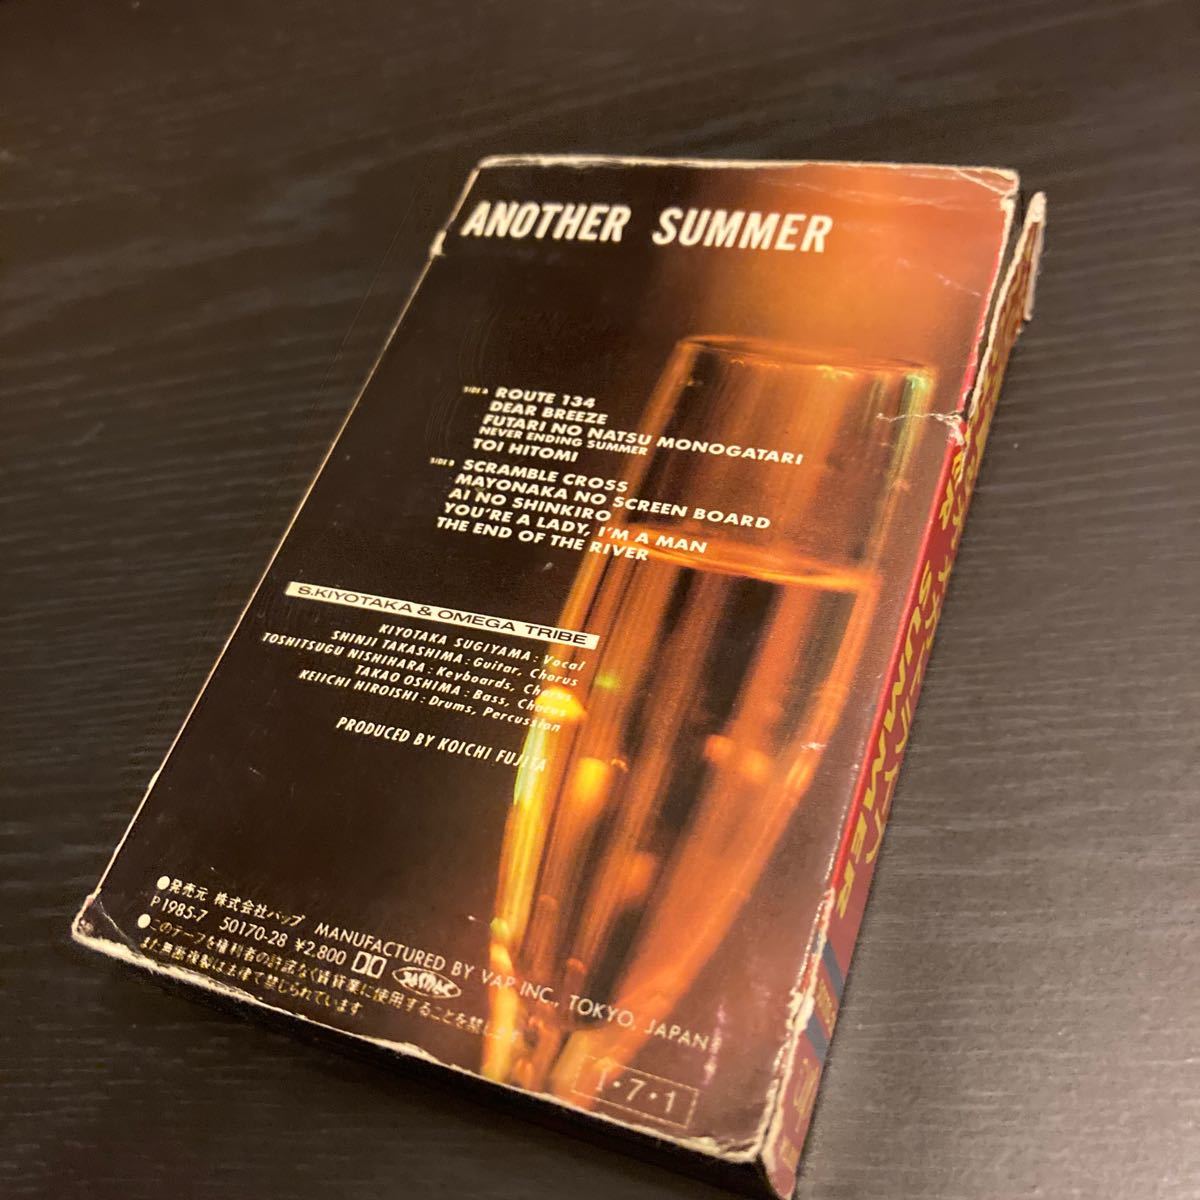 S. Kiyotaka & Omega Tribe 【Another Summer】カセットテープ cassette tape Vap 50170-28 1985 杉山 清貴 オメガトライブの画像4